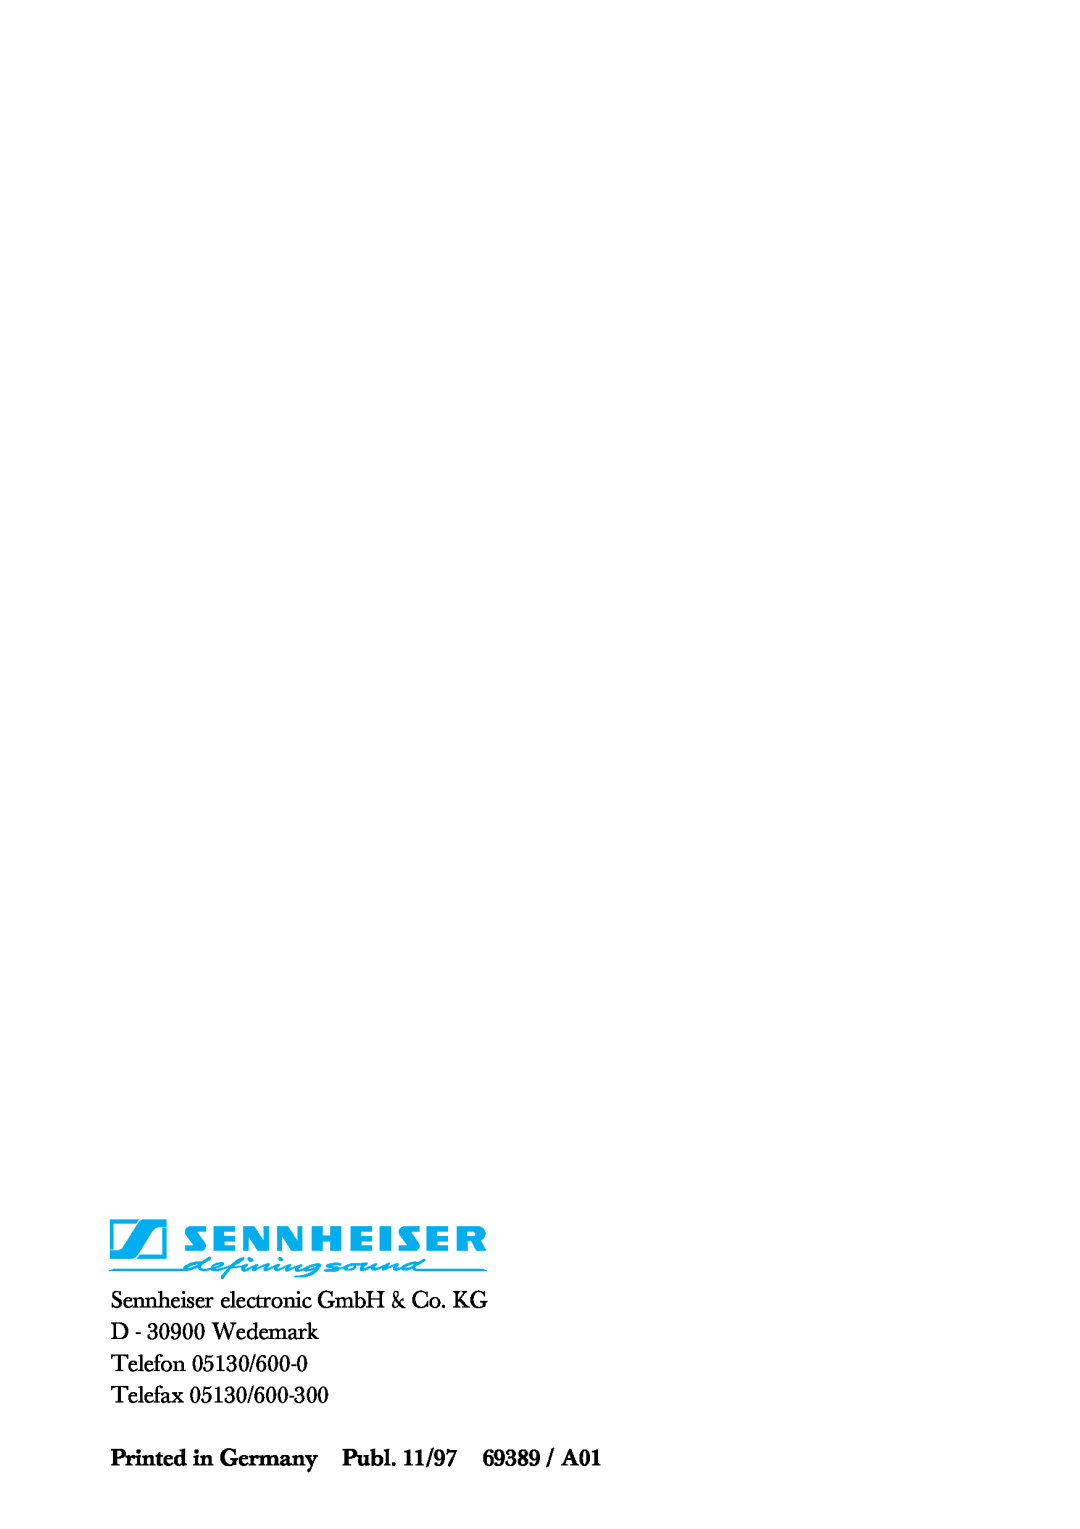 Sennheiser HMEC 200iii manual Telefon 05130/600-0 Telefax 05130/600-300 